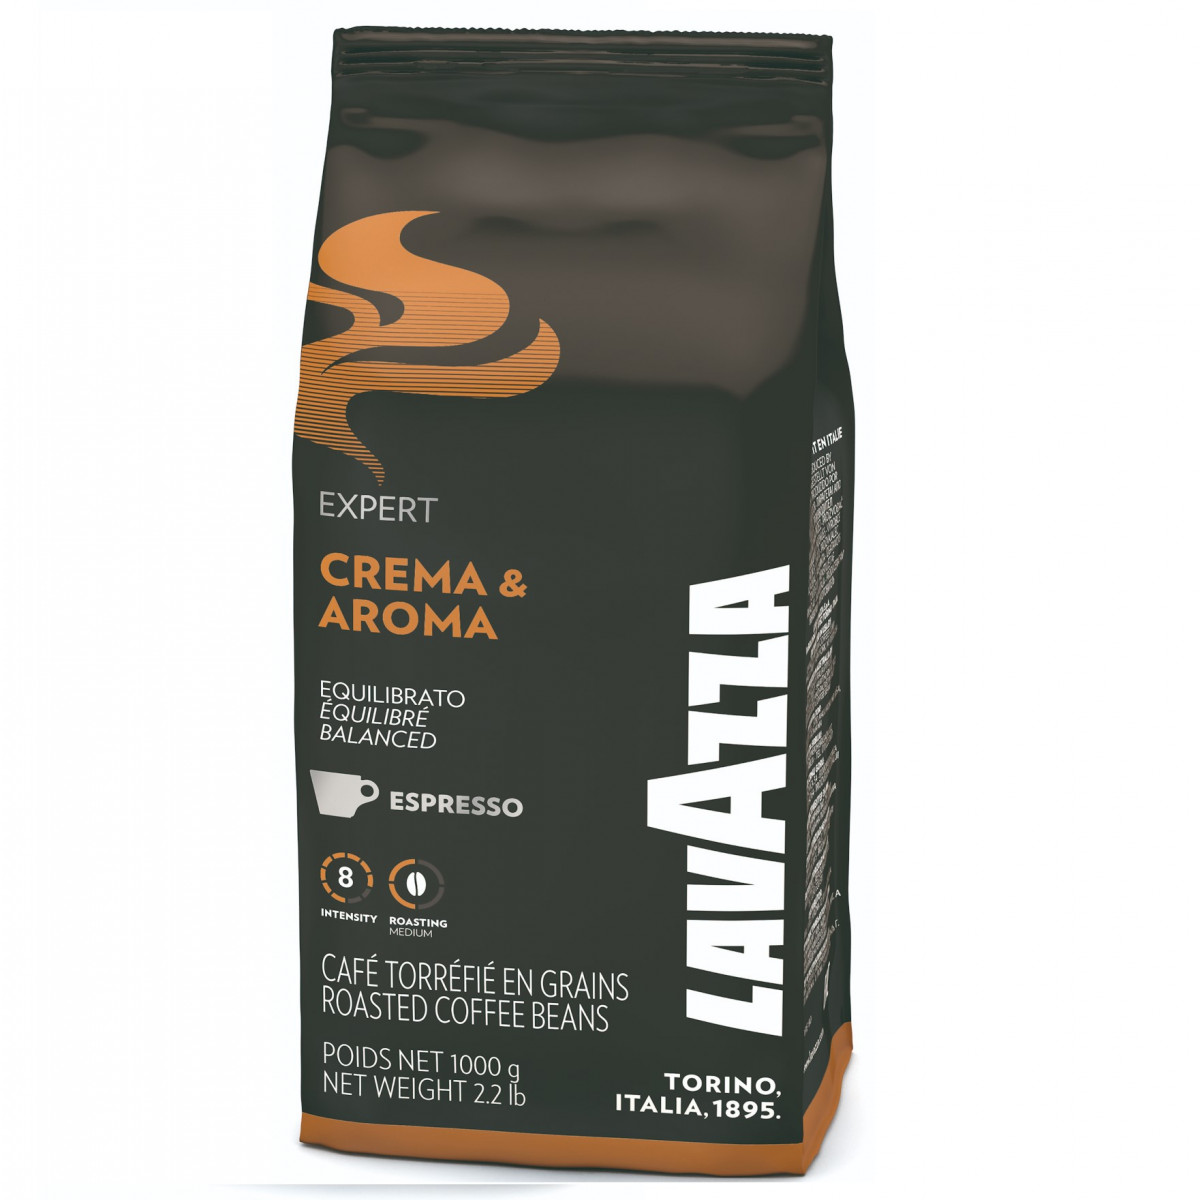 Expert Crema & Aroma 1 kg. Kafijas pupiņas